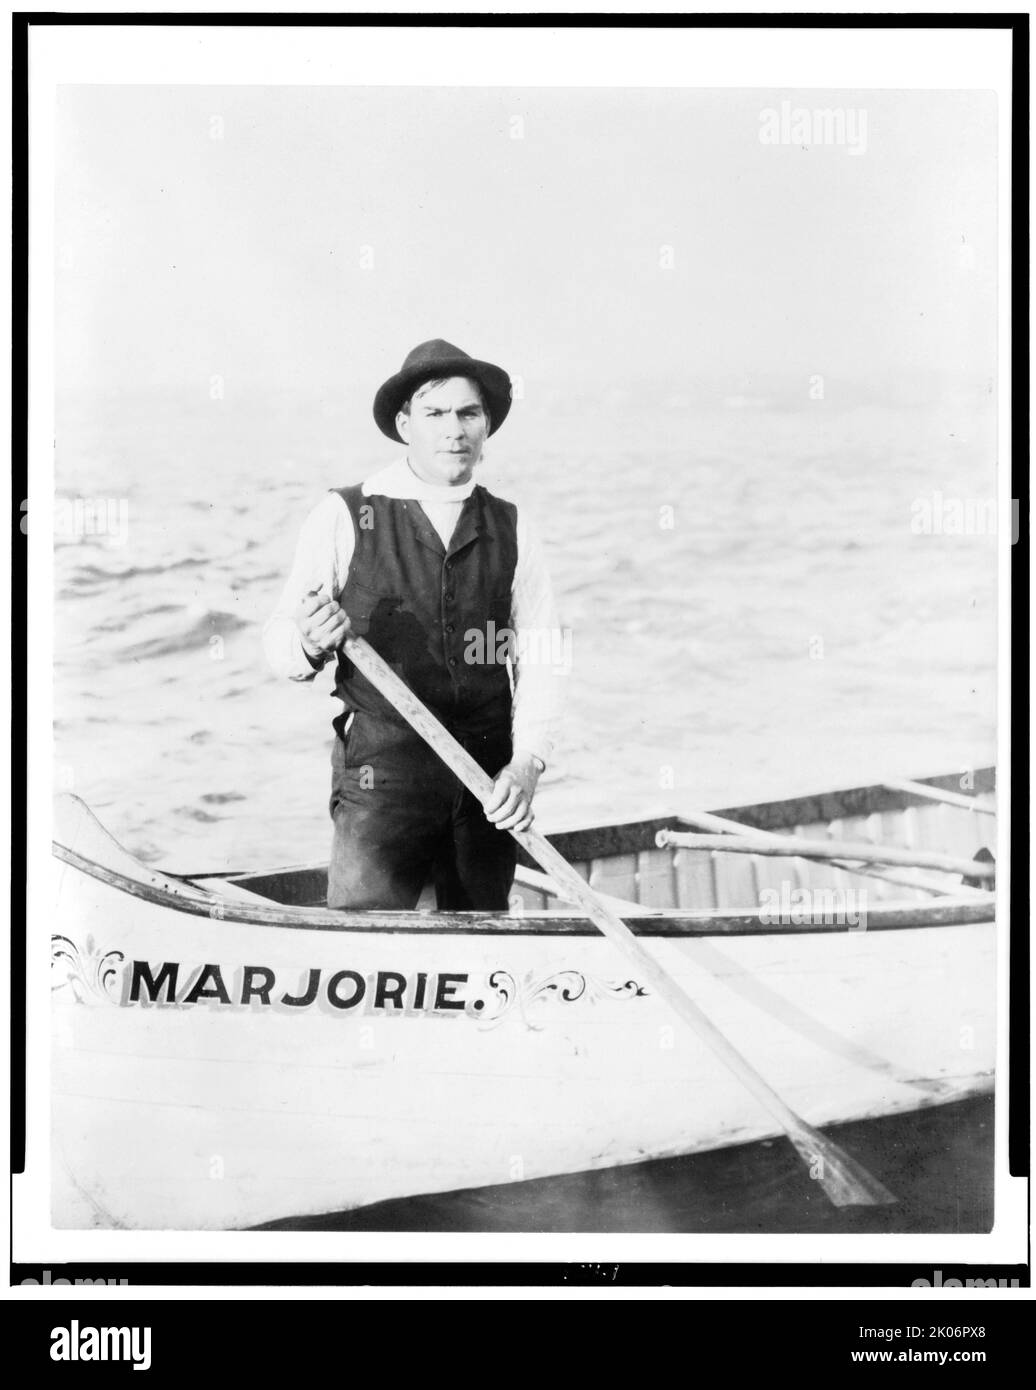 Guide indien pour les rapides, debout en canoë, dans la région de Sault Sainte Marie, Michigan, 1903. (Homme américain natif en canoë nommé Marjorie). Banque D'Images